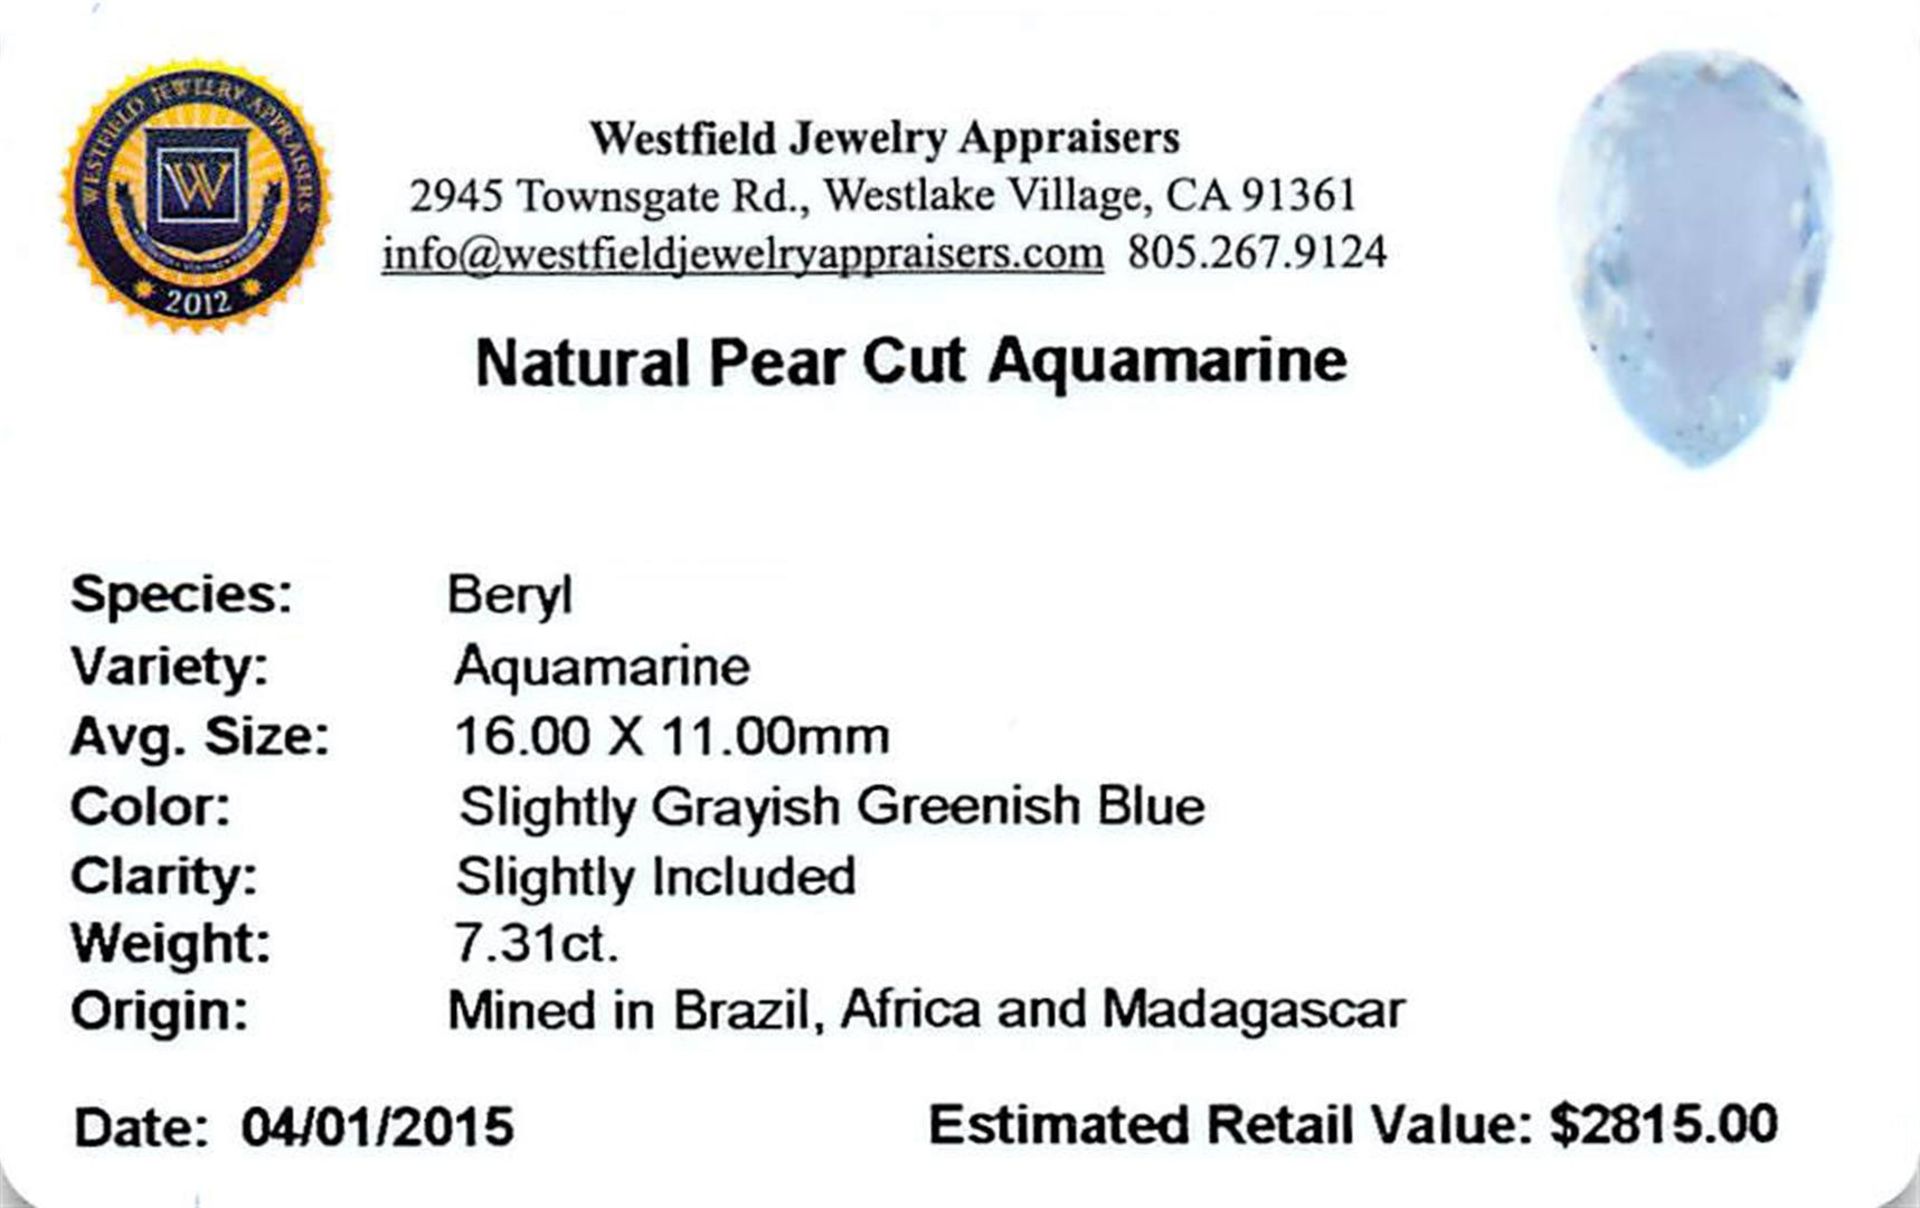 7.31 ctw Pear Aquamarine Parcel - Image 2 of 2